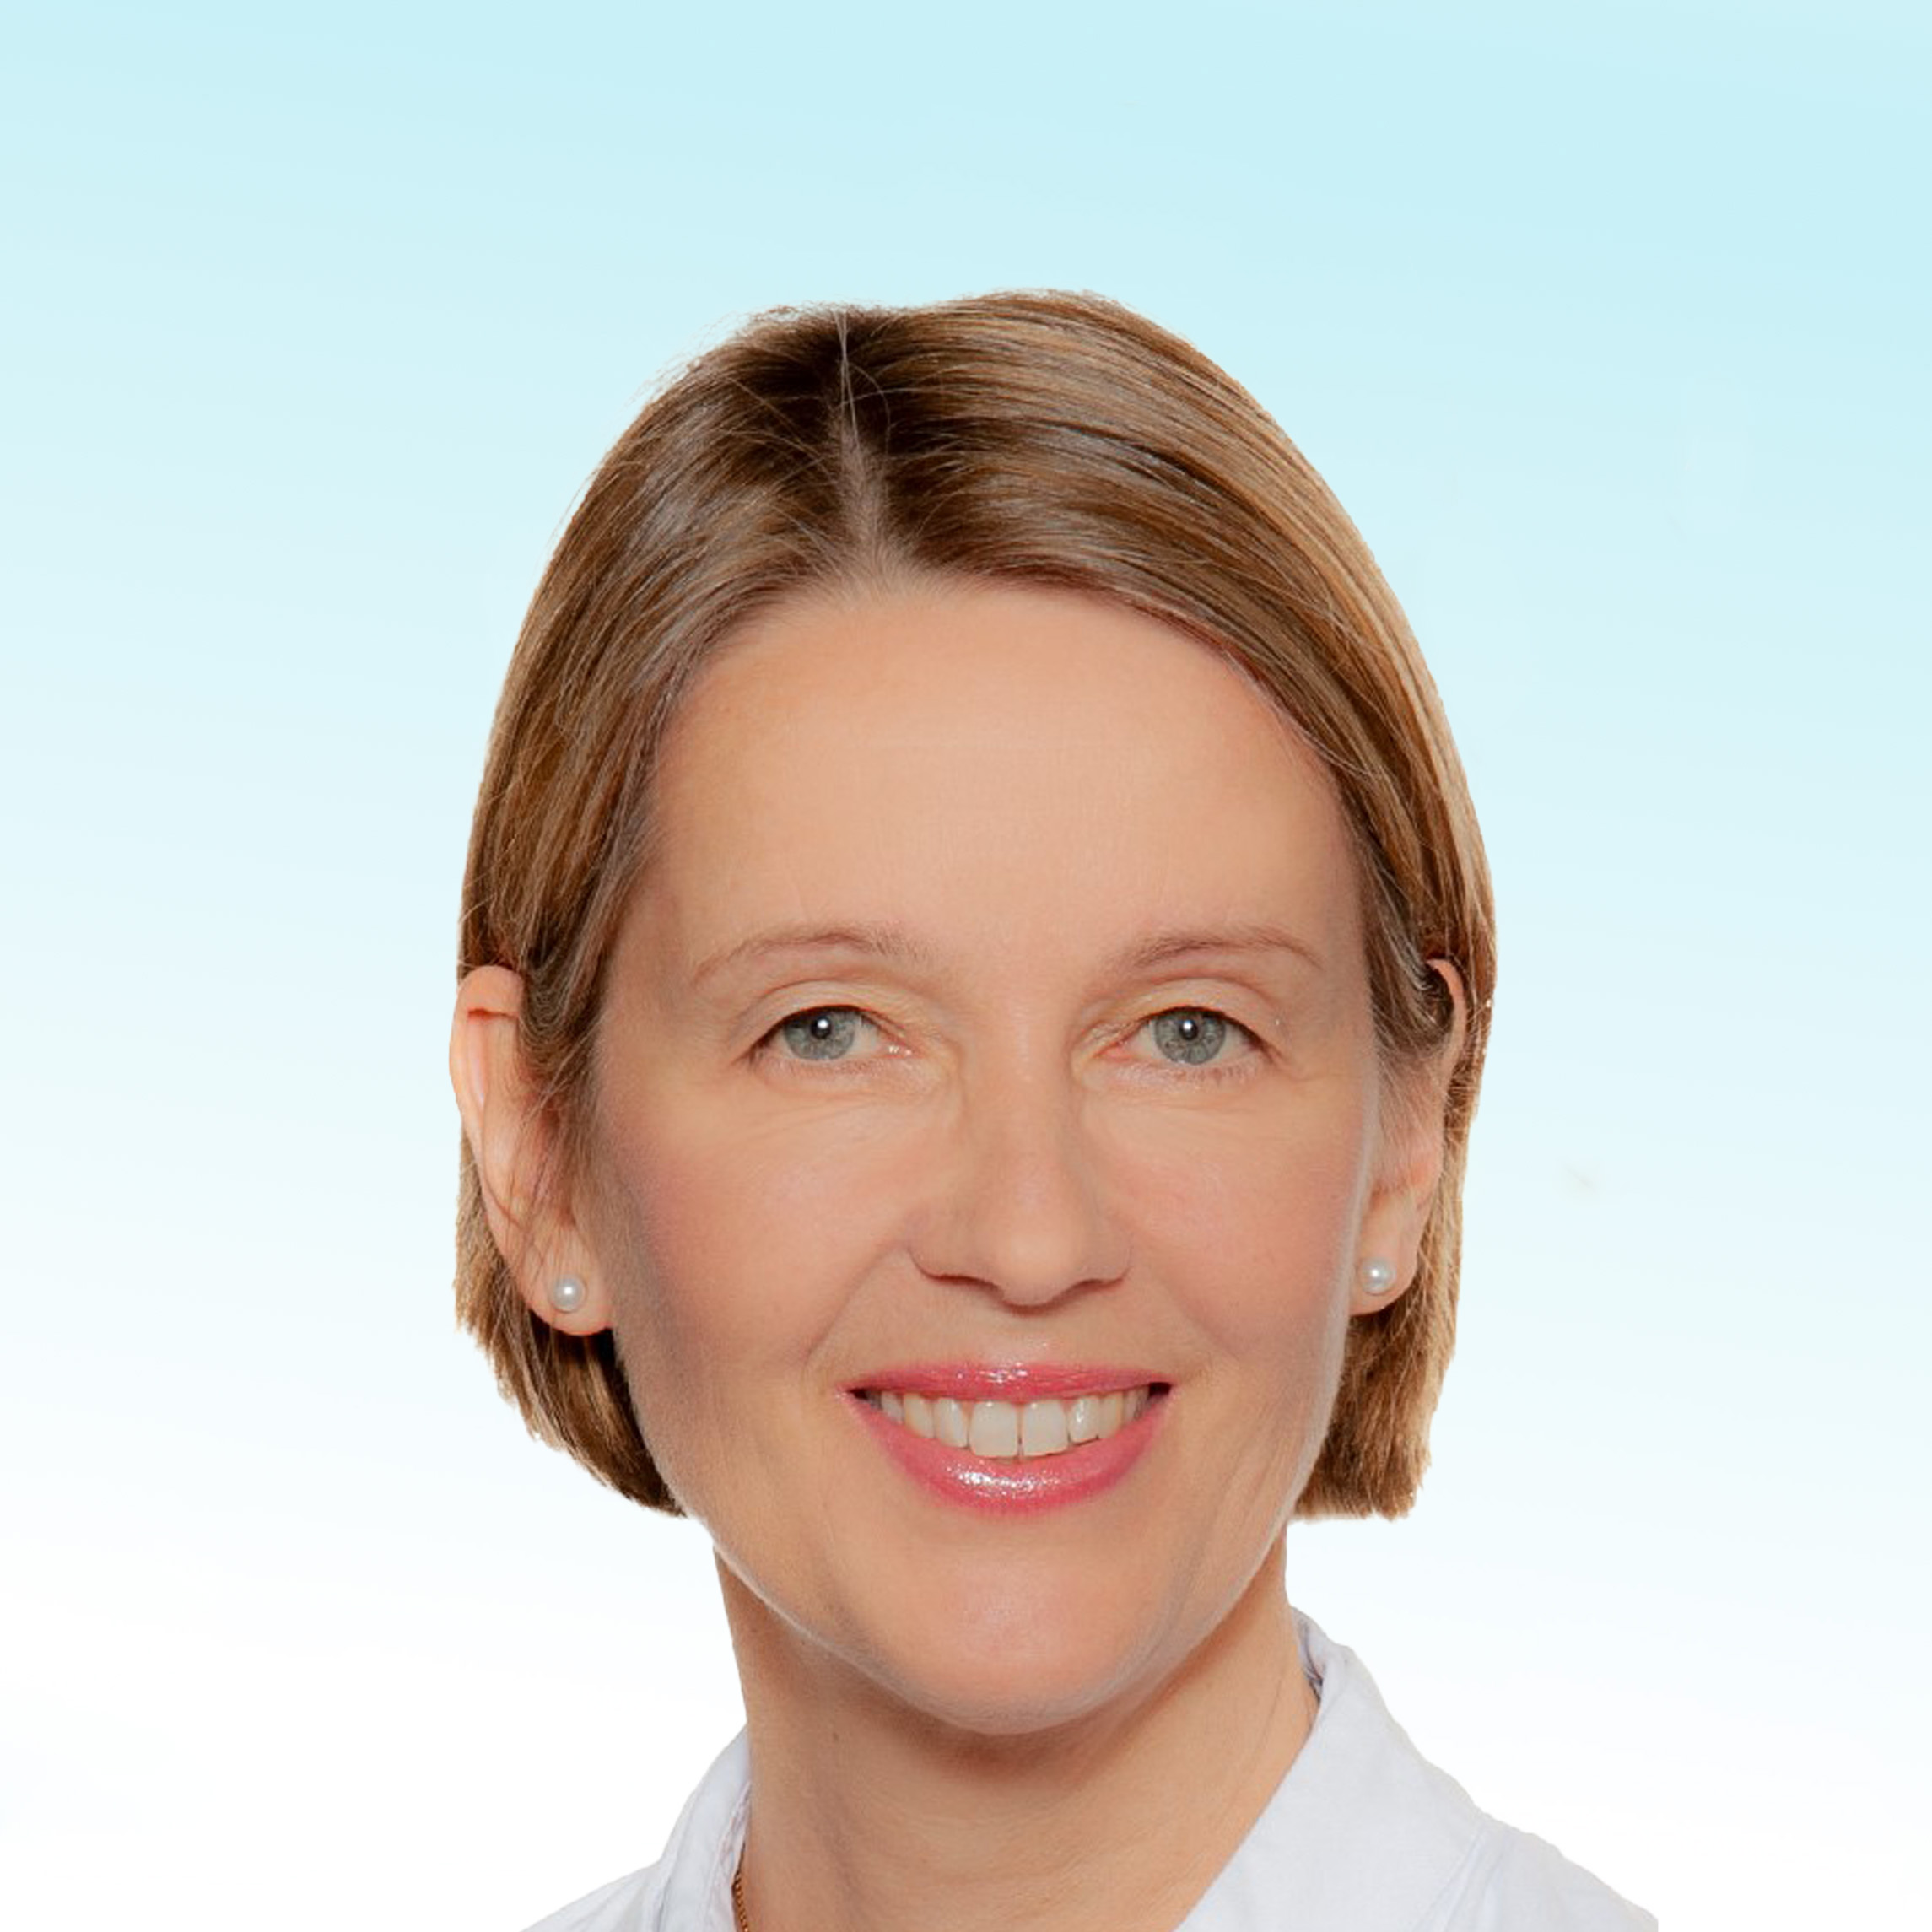 Dermatologo, Prof. Dr. med. Karin Hartmann